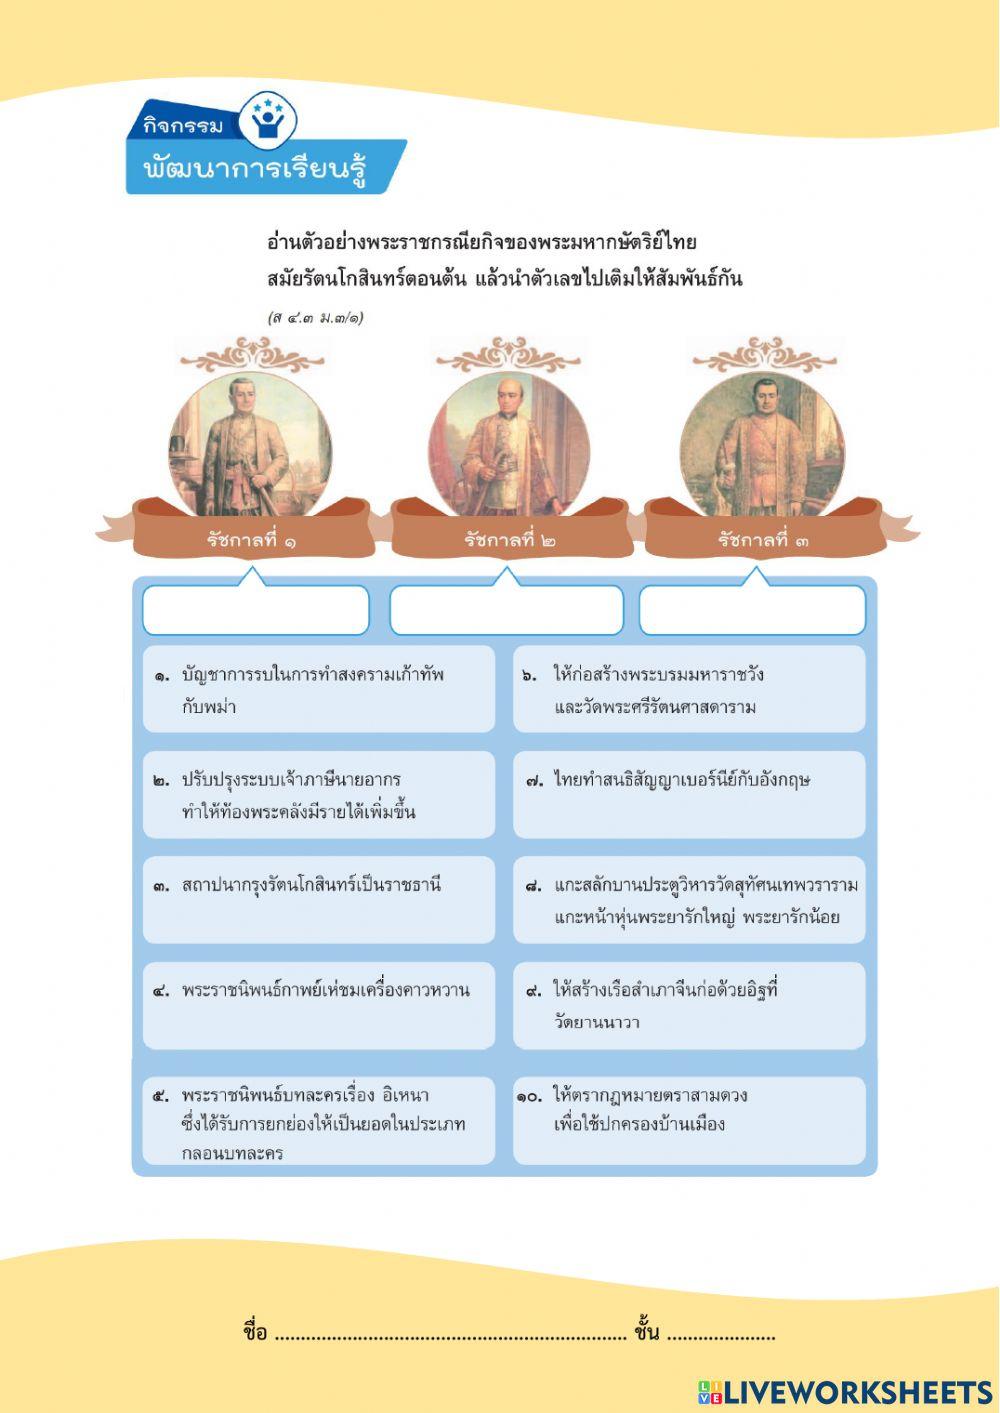 พระราชกรณียกิจของพระมหากษัตริย์ไทย สมัยรัตนโกสินทร์ตอนต้น